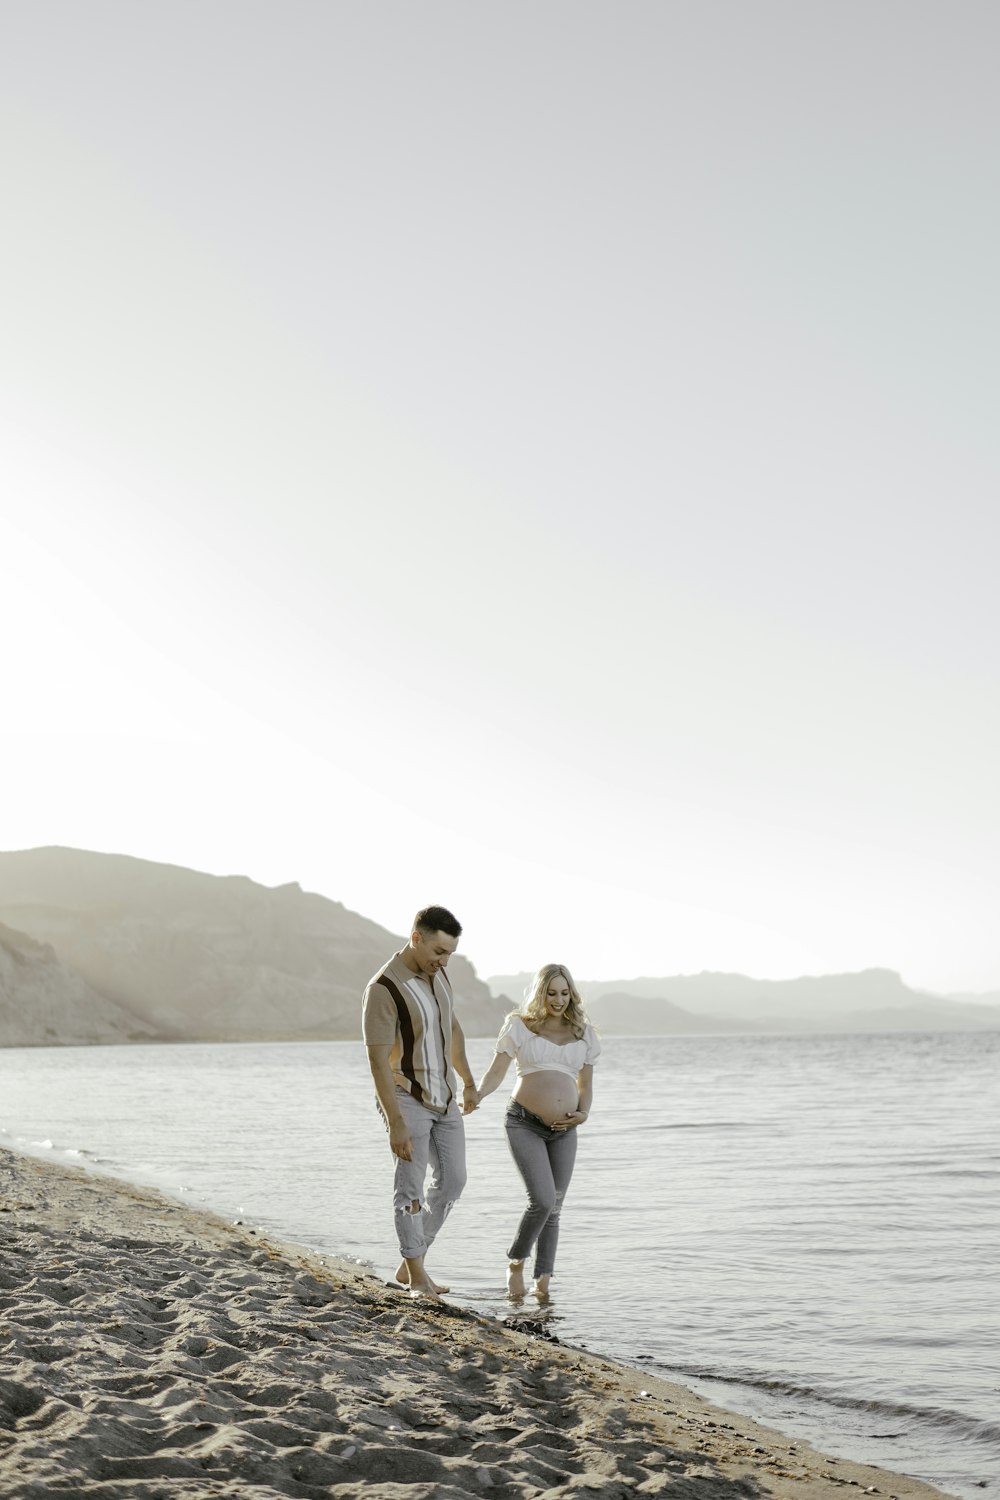 Ein Mann und eine Frau, die an einem Strand spazieren gehen